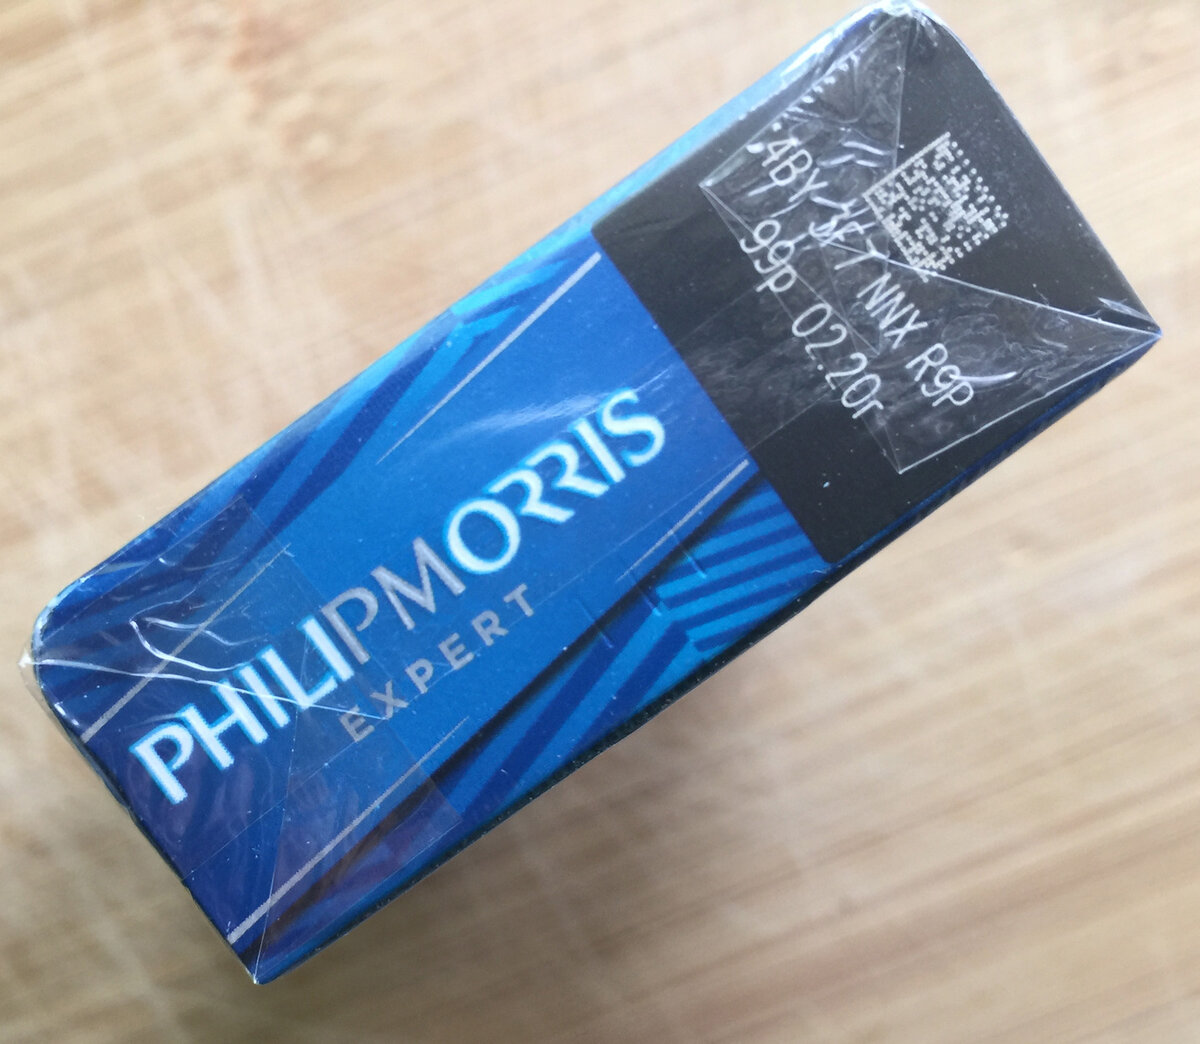 Филип моррис компакт. Филип Моррис компакт эксперт (Philip Morris Compact Expert). Philip Morris сигареты компакт эксперт МРЦ 115. Сигареты Philip Morris Signature Expert. Филипс Морис эксперт сигареты.